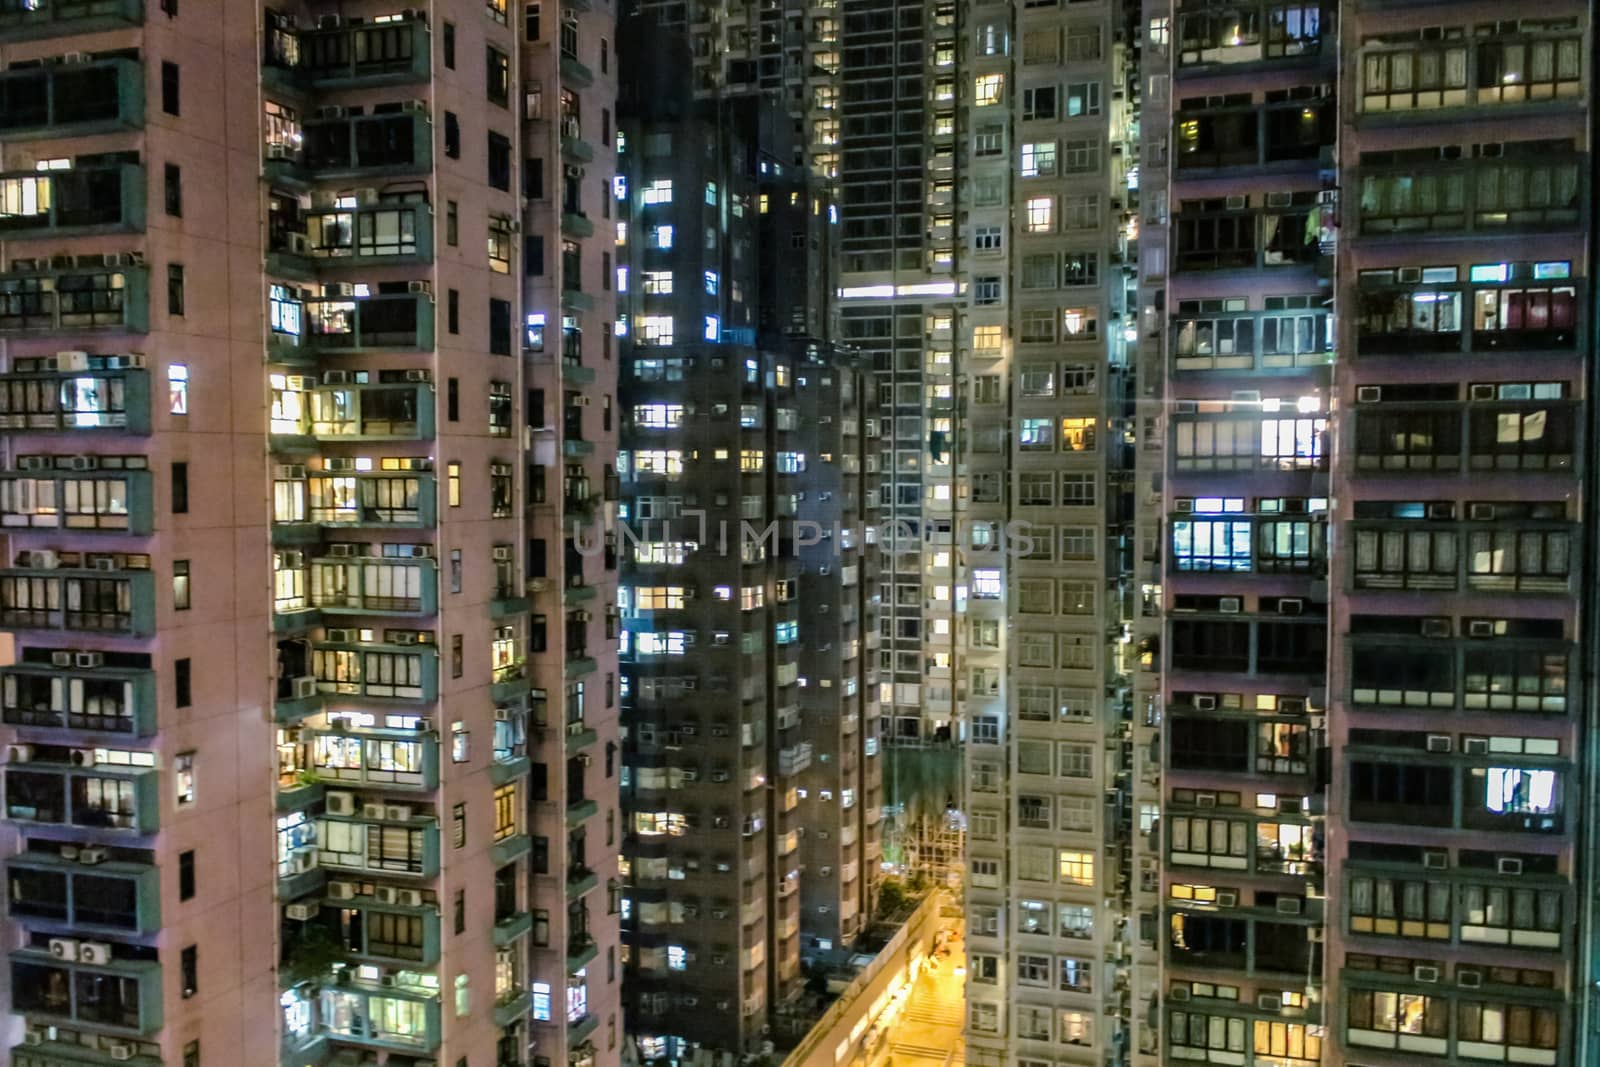 The skyscrapers of Hong Kong close up at night. by rdv27